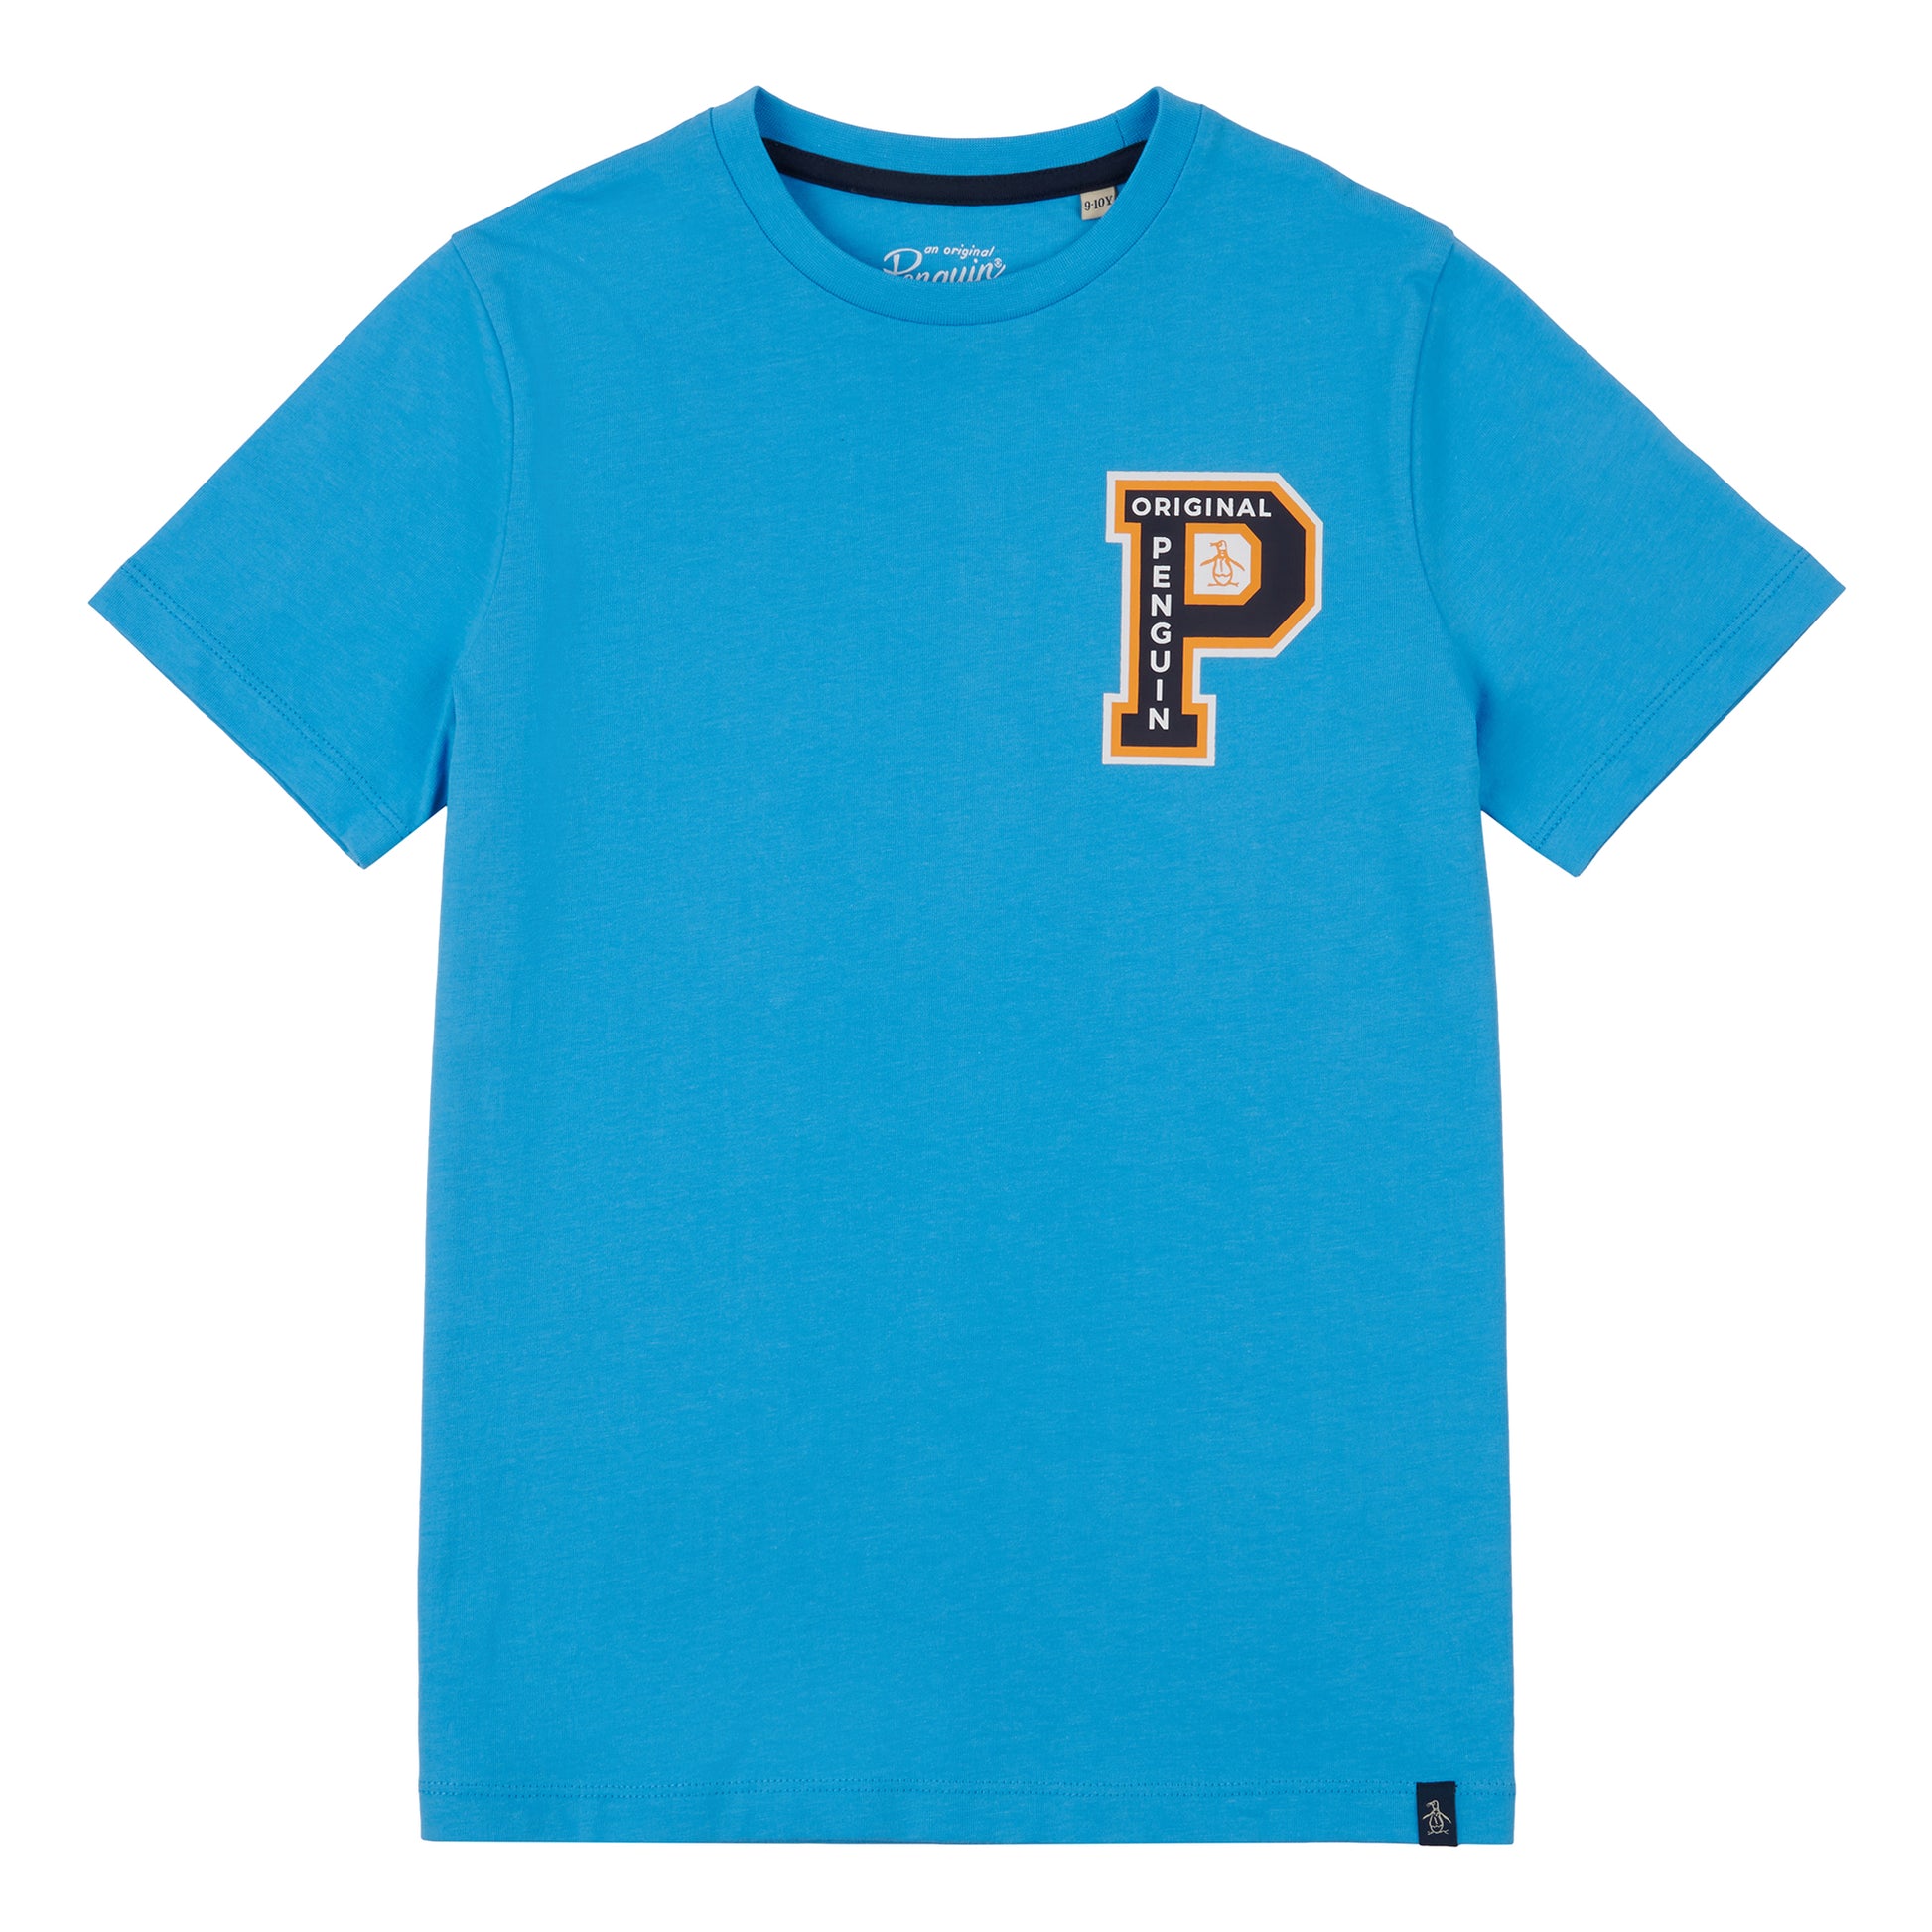 Penguin Boys Collegiate Slub T-Shirt